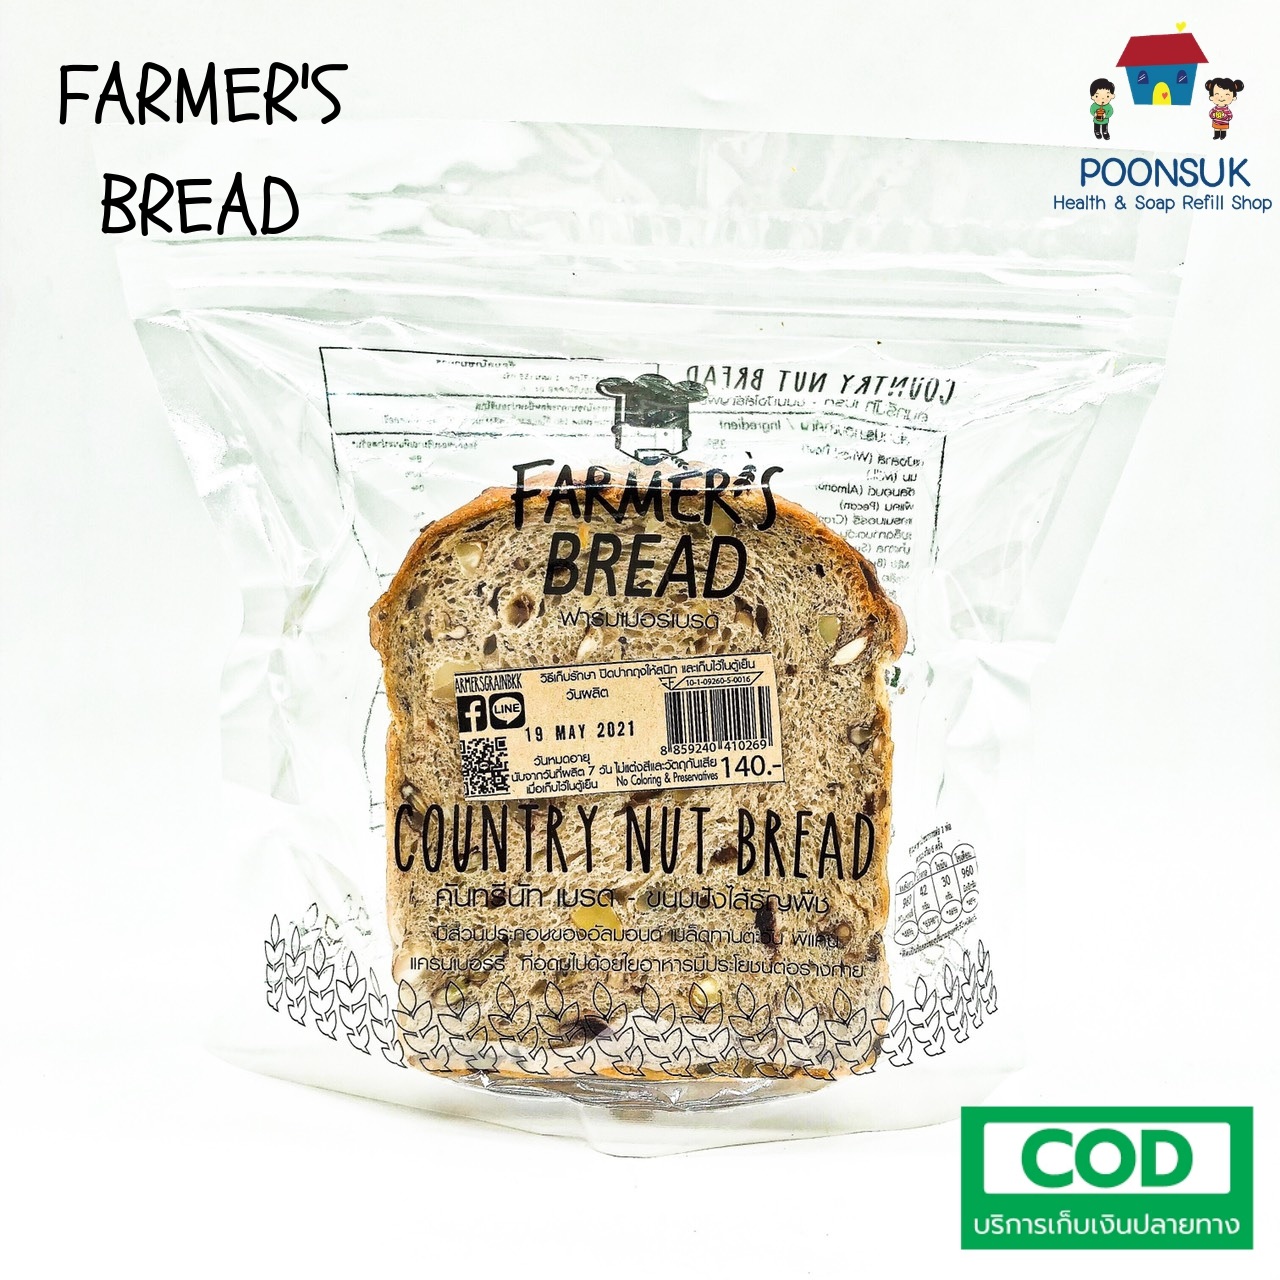 FARMERS GRAIN country nut bread ฟาร์มเมอร์ เกรน คันทรีนัท เบรด ขนมปังแถว ขนมปังแผ่น ขนมปังธัญพืช สูตรปกติ 300g (6แผ่น)